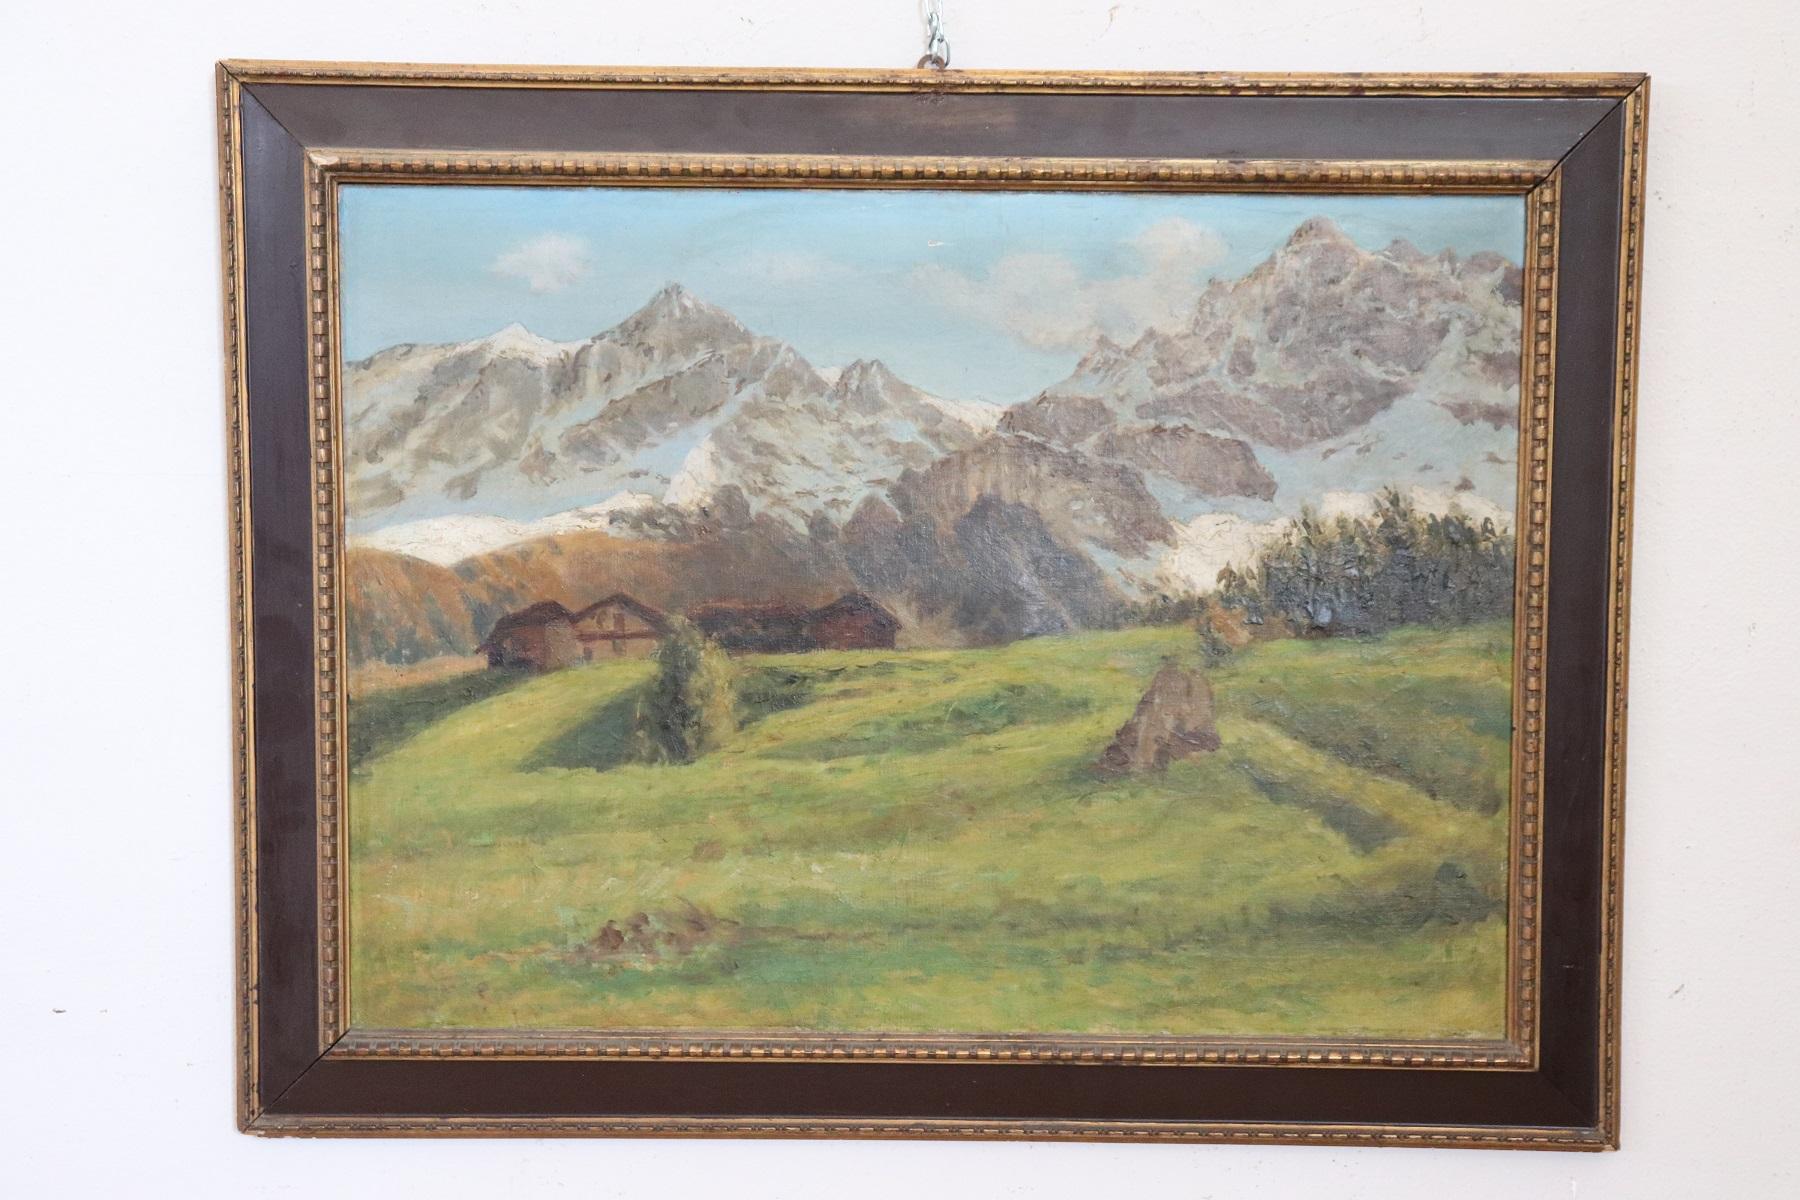 Belle peinture à l'huile sur toile des années 1930. Un splendide paysage de montagne italien. Artiste non reconnu. Parfait pour les collectionneurs qui aiment les paysages de montagne. Excellente qualité picturale. Vendu avec un cadre en bois.